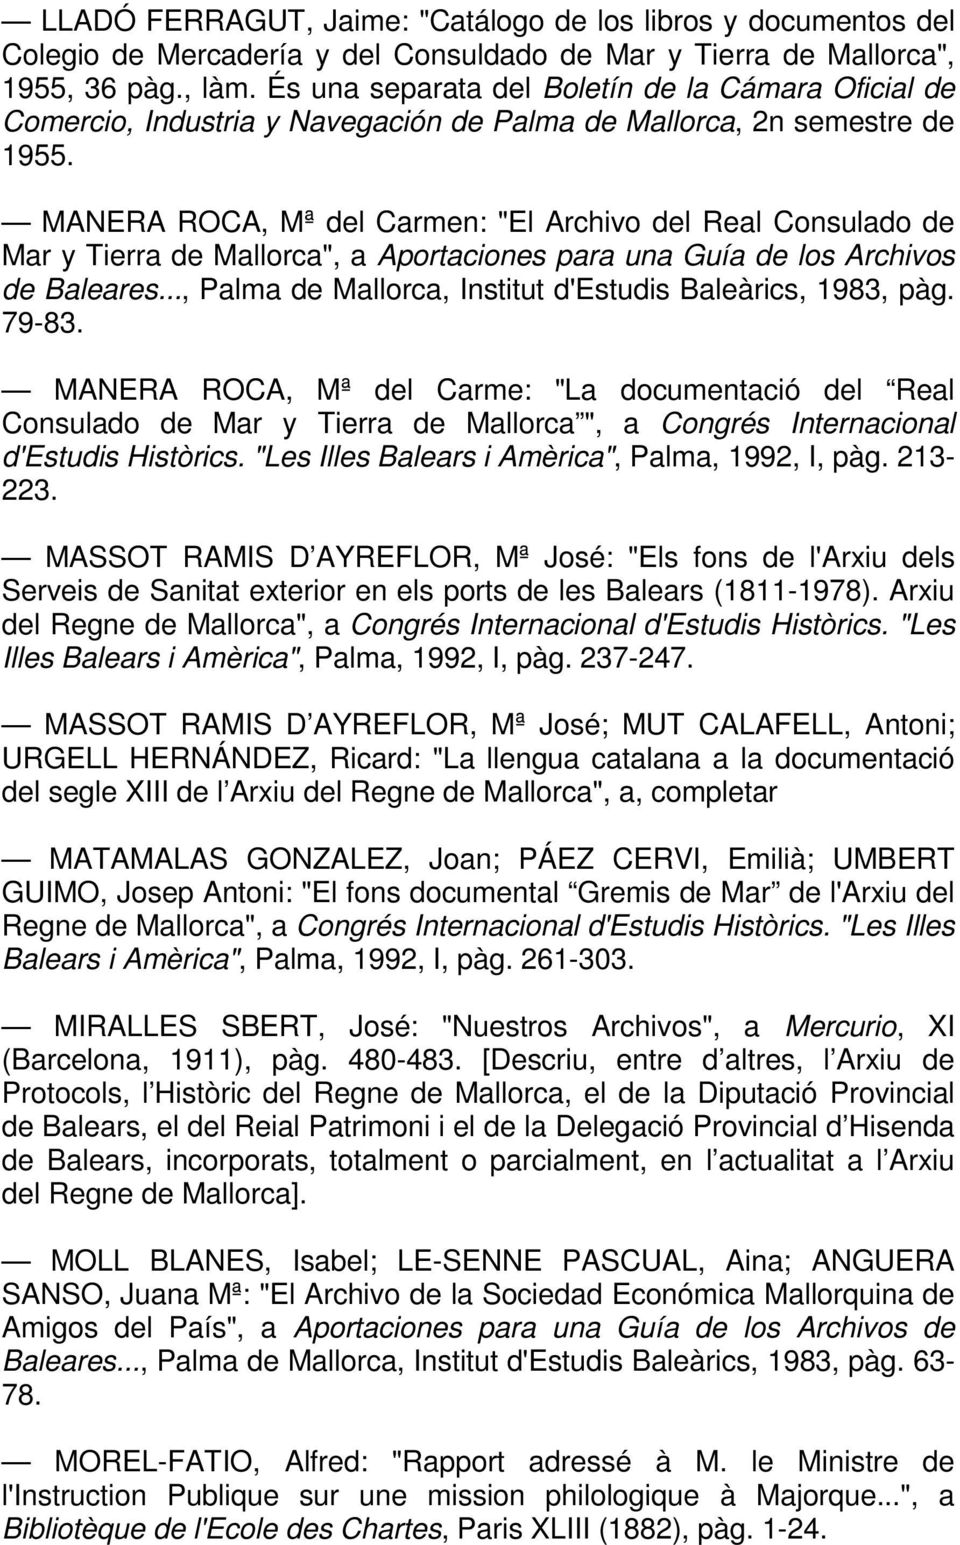 MANERA ROCA, Mª del Carmen: "El Archivo del Real Consulado de Mar y Tierra de Mallorca", a Aportaciones para una Guía de los Archivos de Baleares.